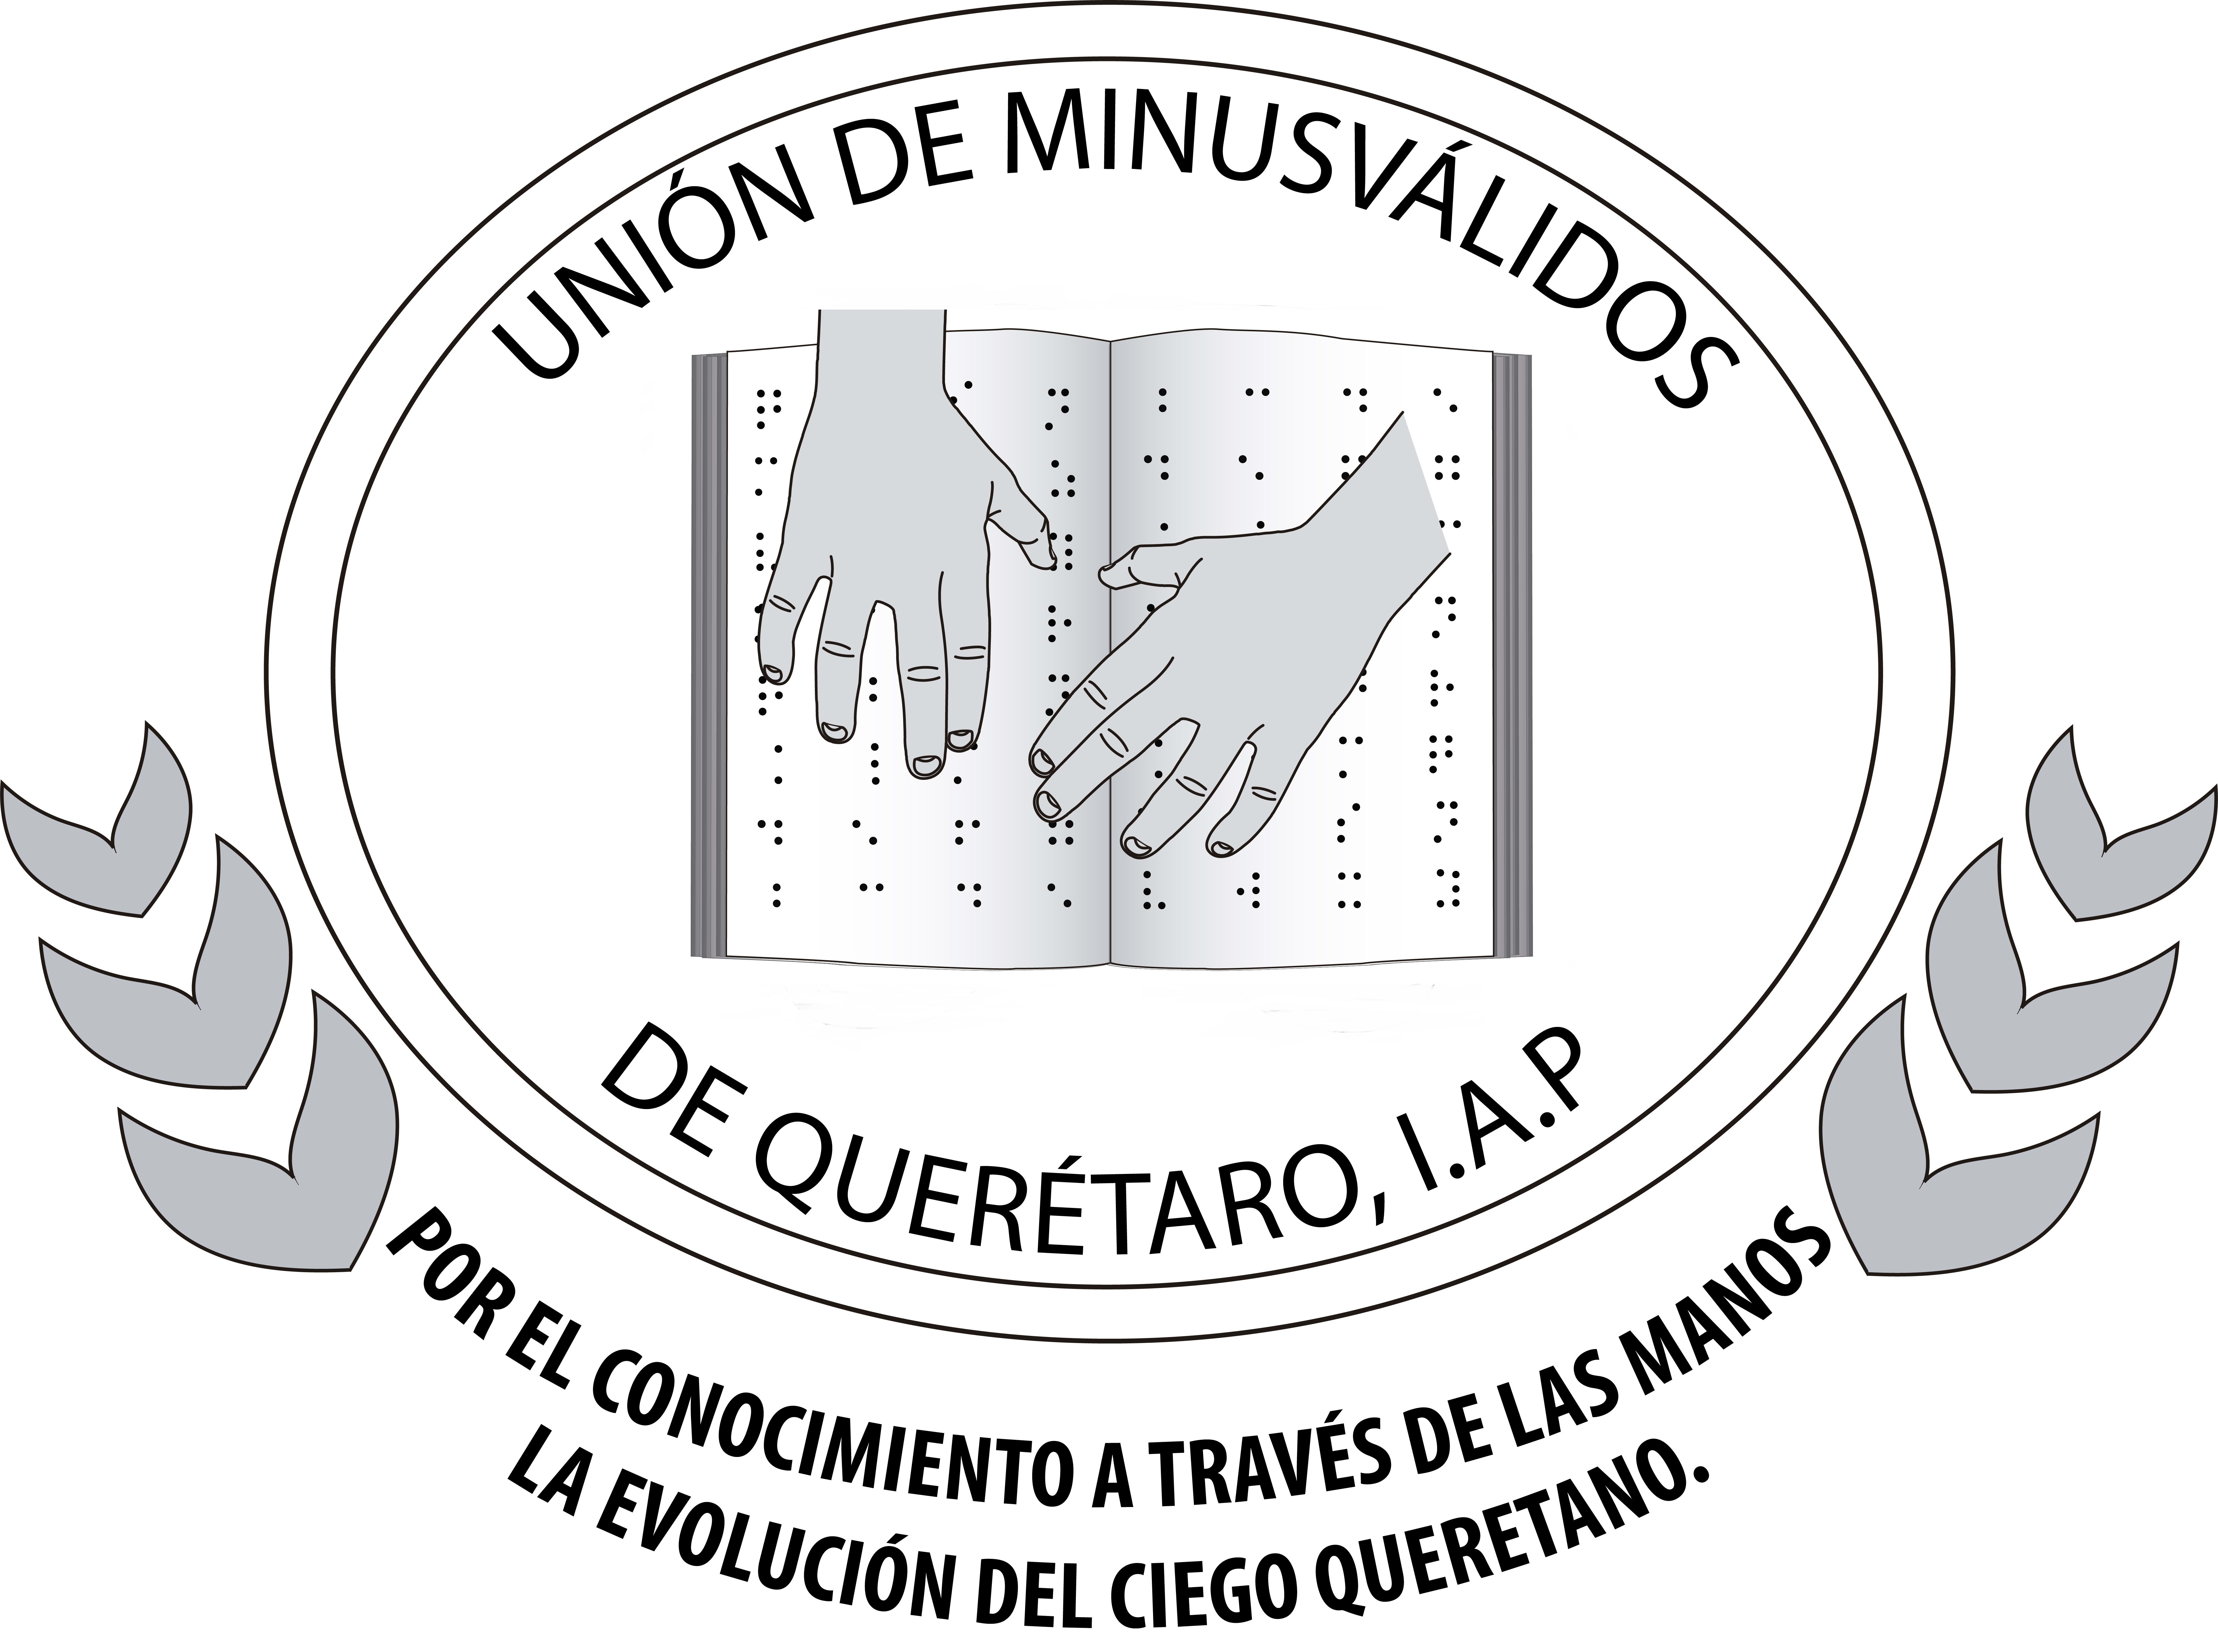 Unión de Minusválidos de Querétaro